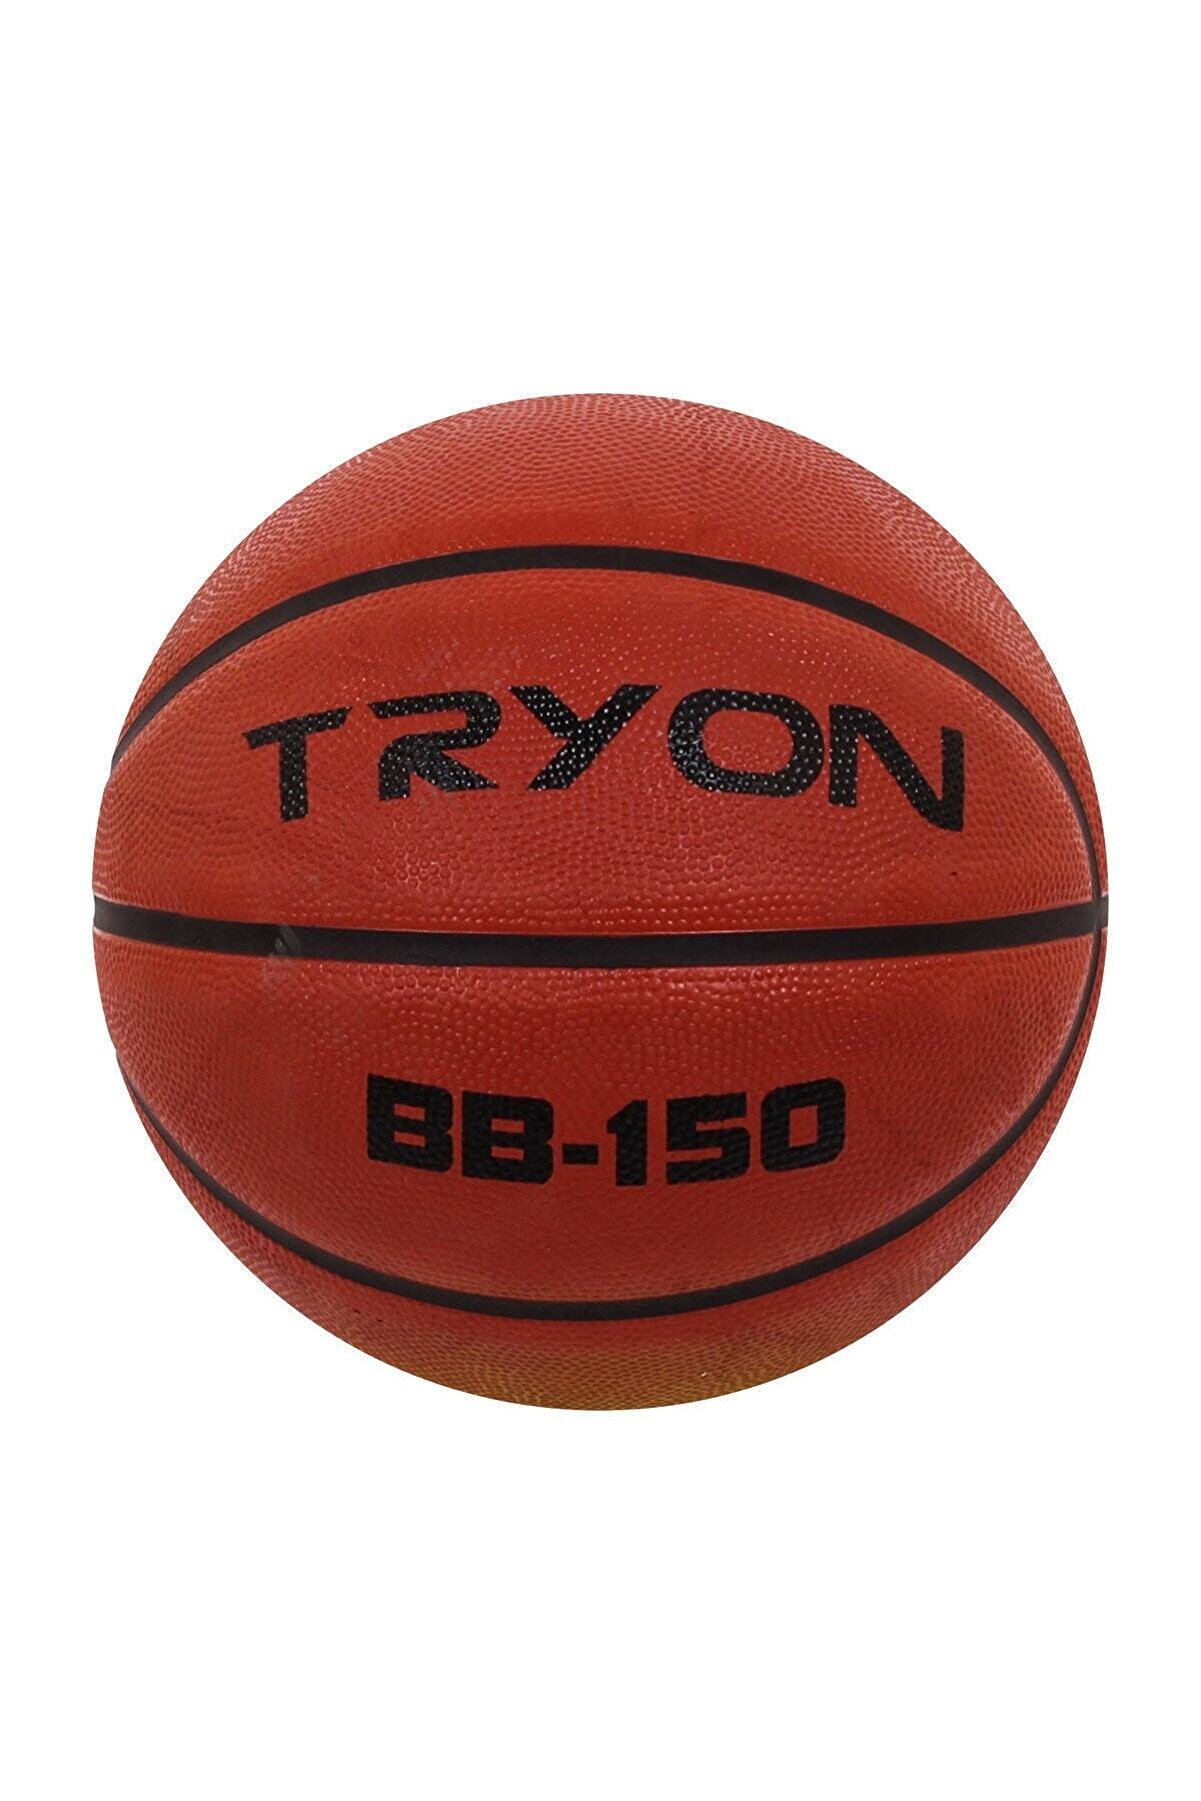 TRYON Basketbol Topu Bb-150